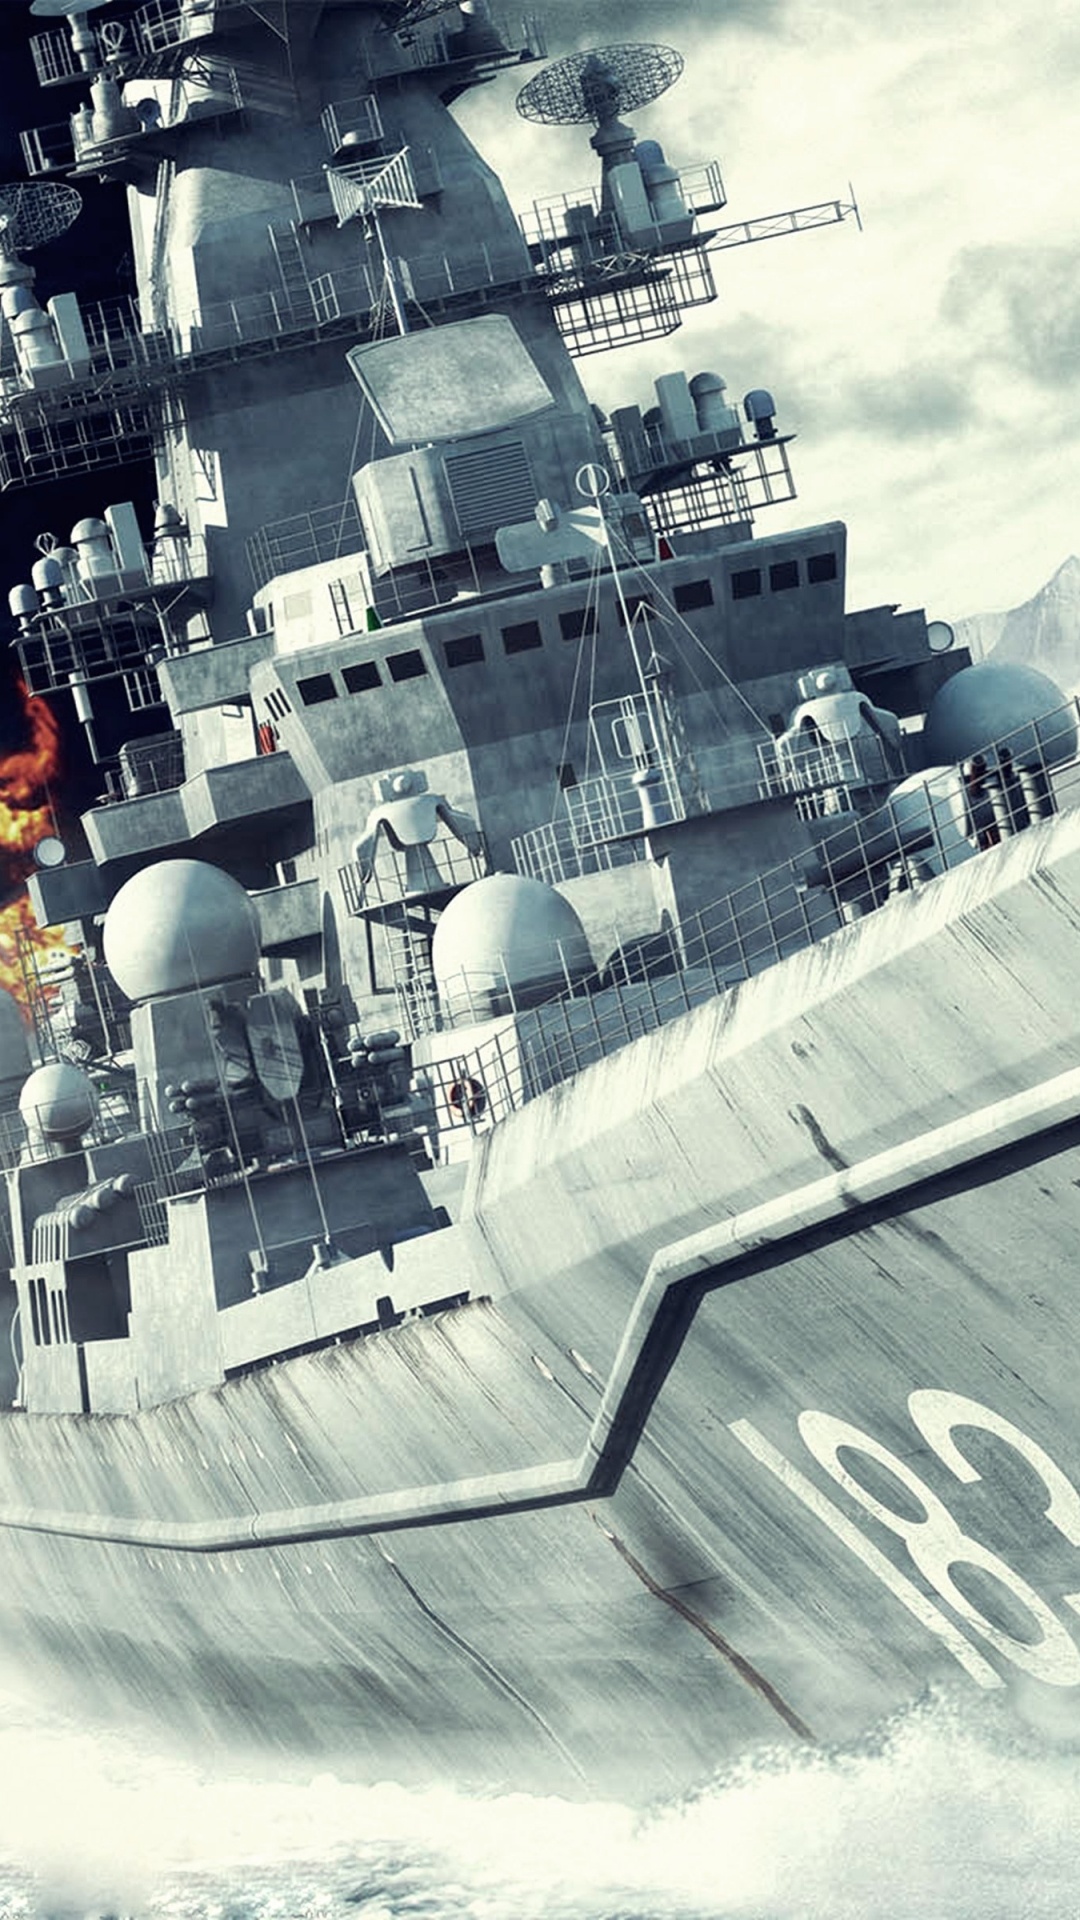 Battleship, Naval Ship, Warship, Battlecruiser, Destroyer. Wallpaper in 1080x1920 Resolution